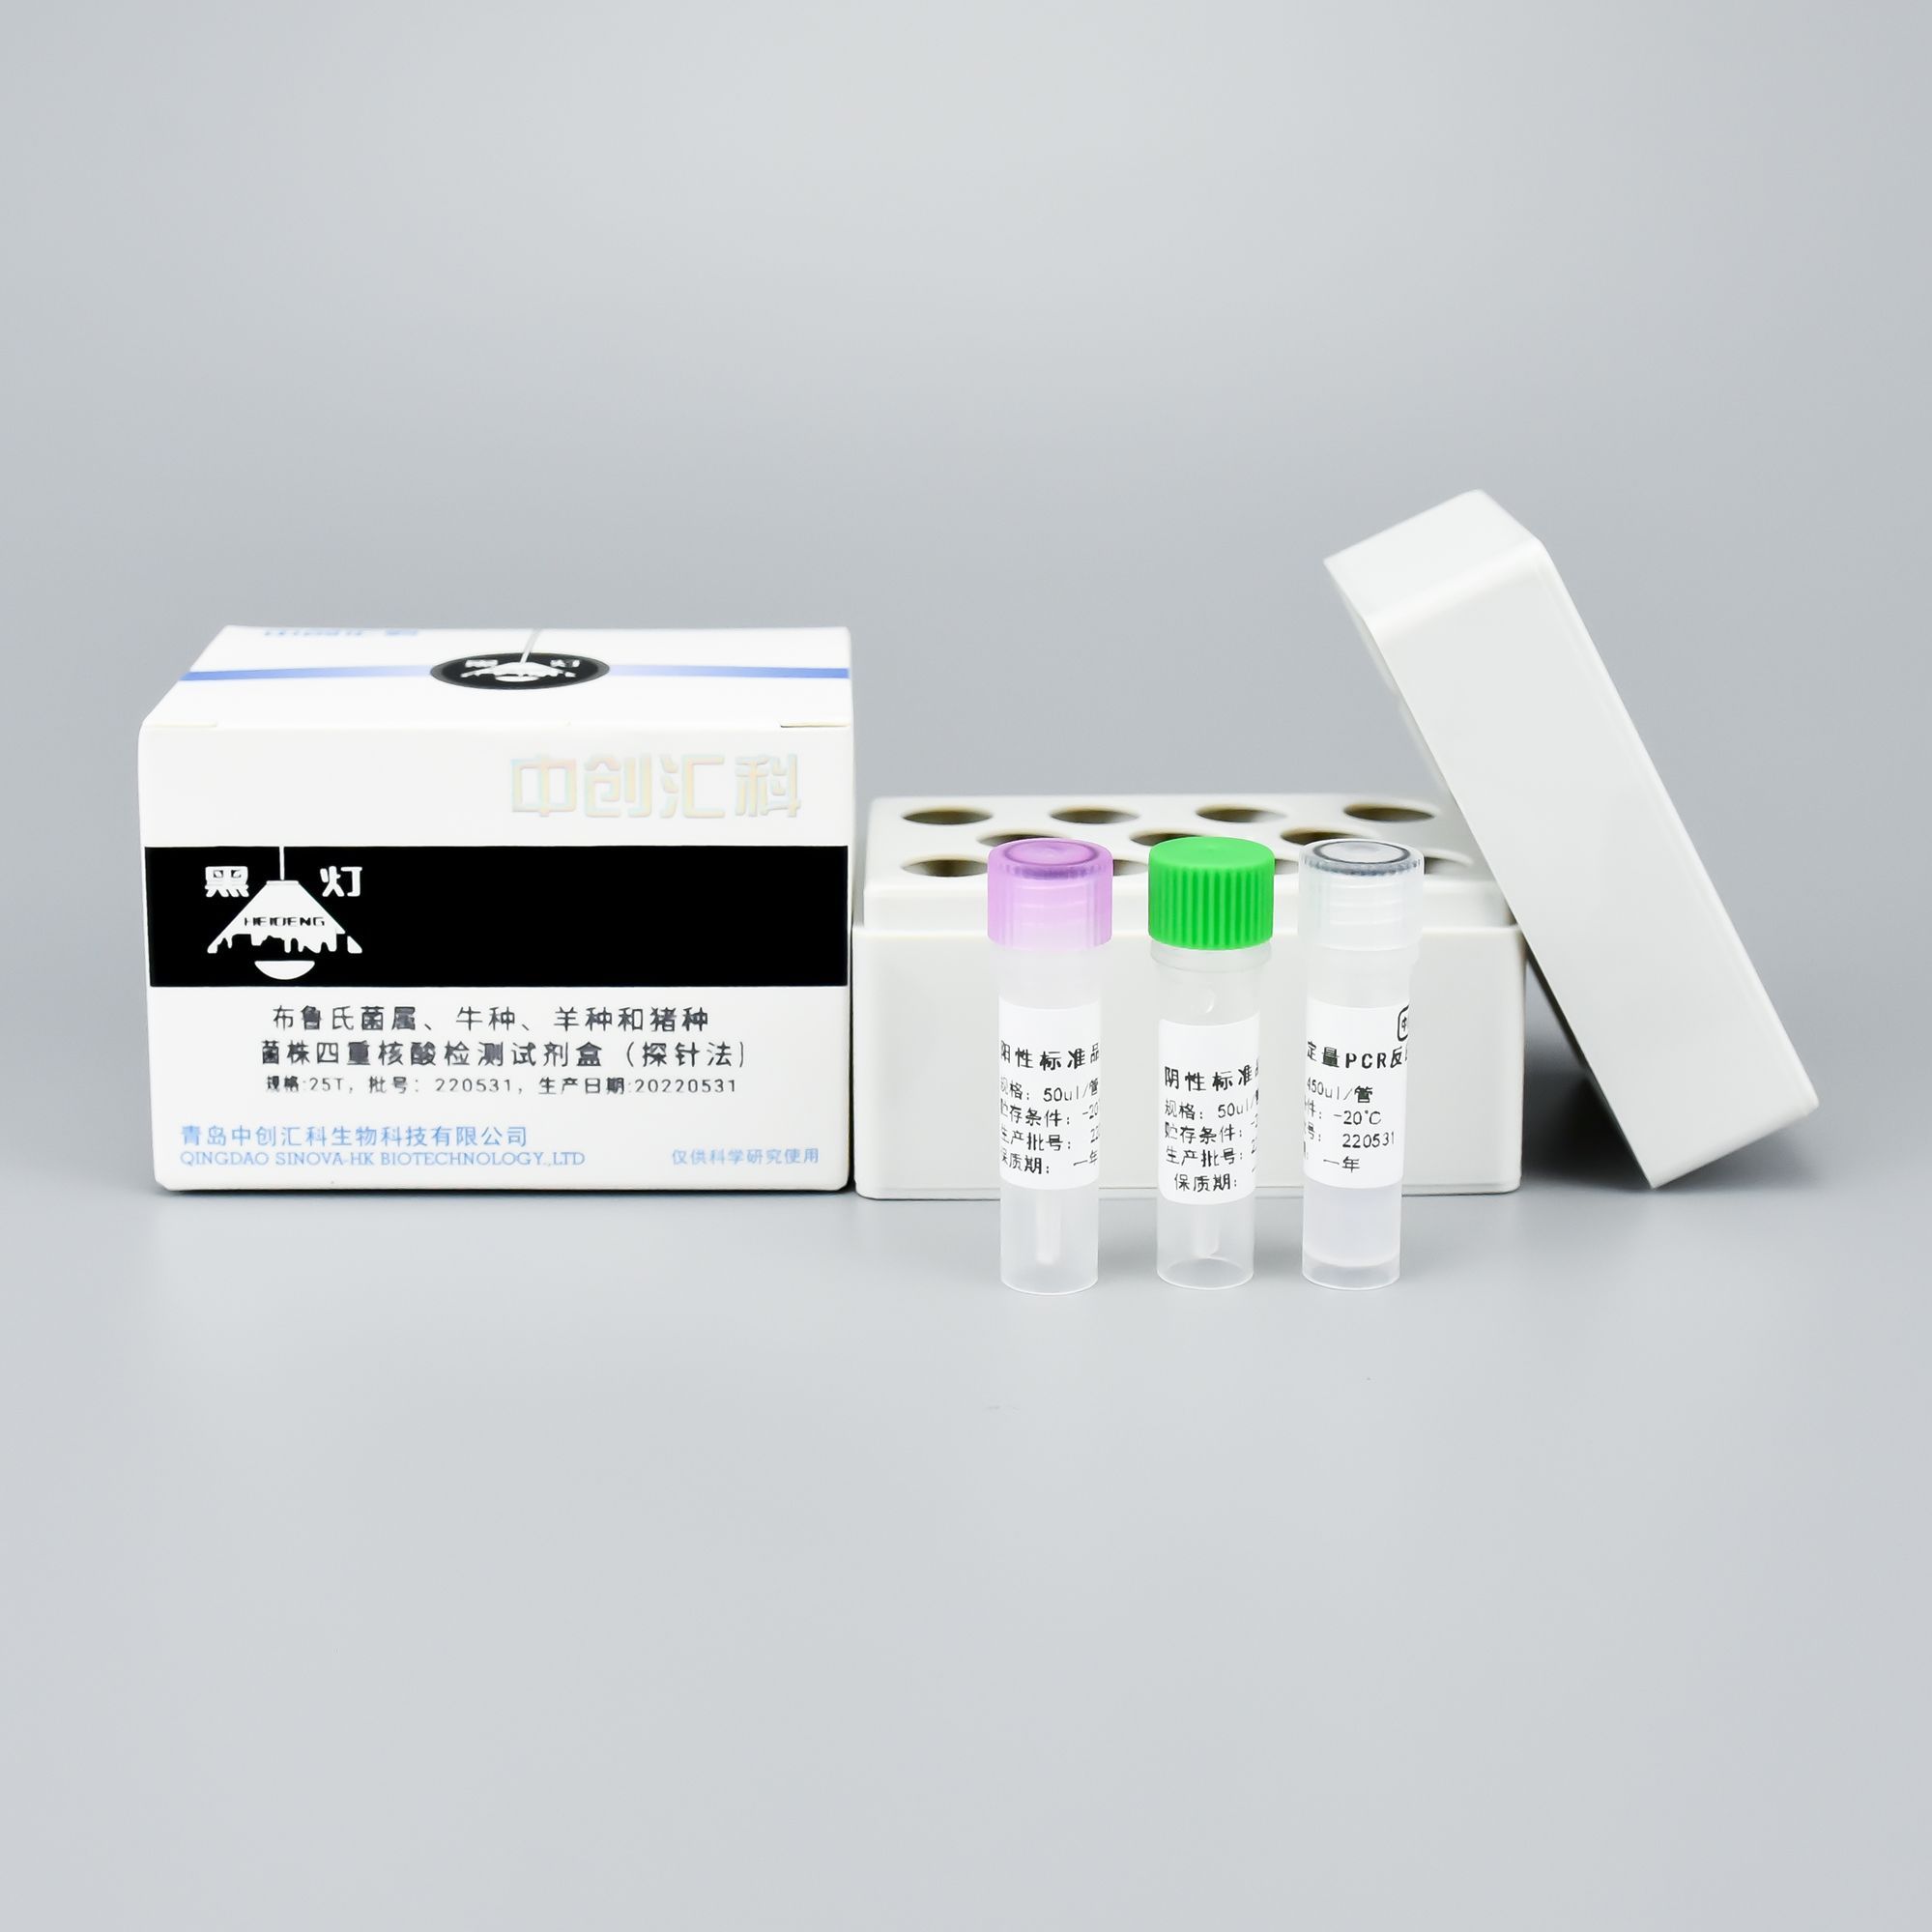 布鲁氏菌属、牛种、羊种和猪种菌株四重核酸检测试剂盒（探针法）